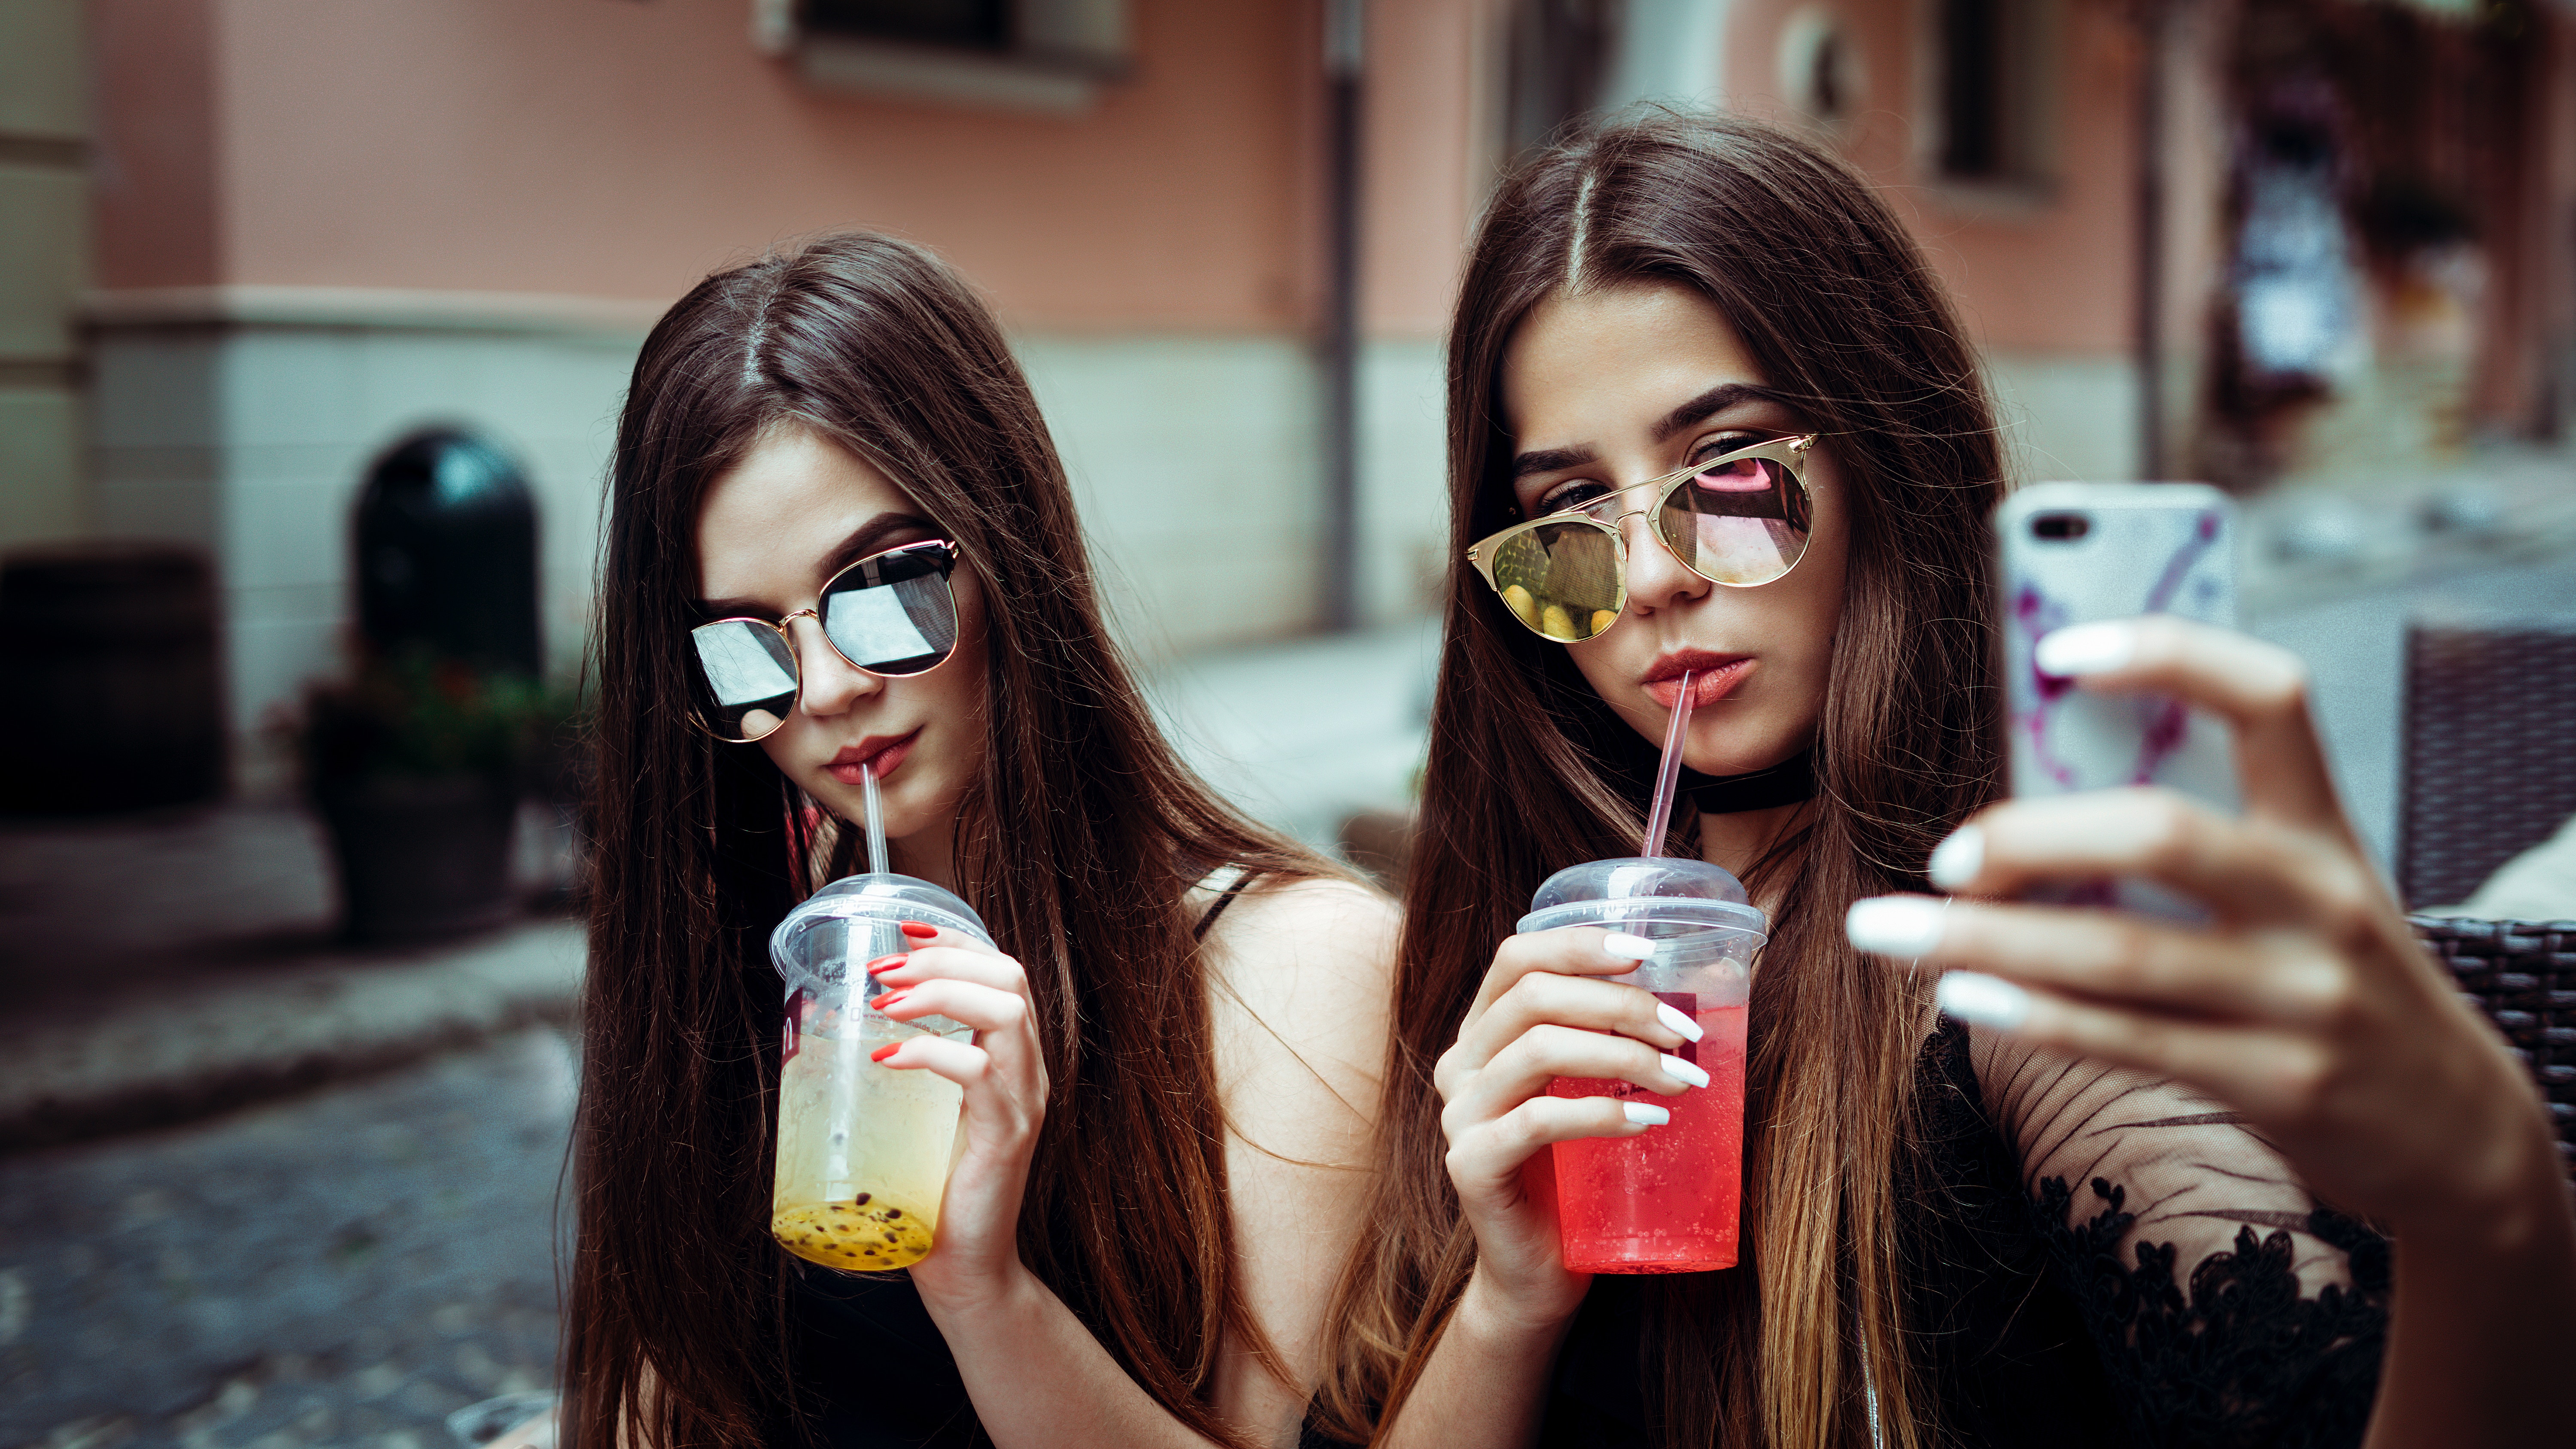 Teens with drinks - selfie